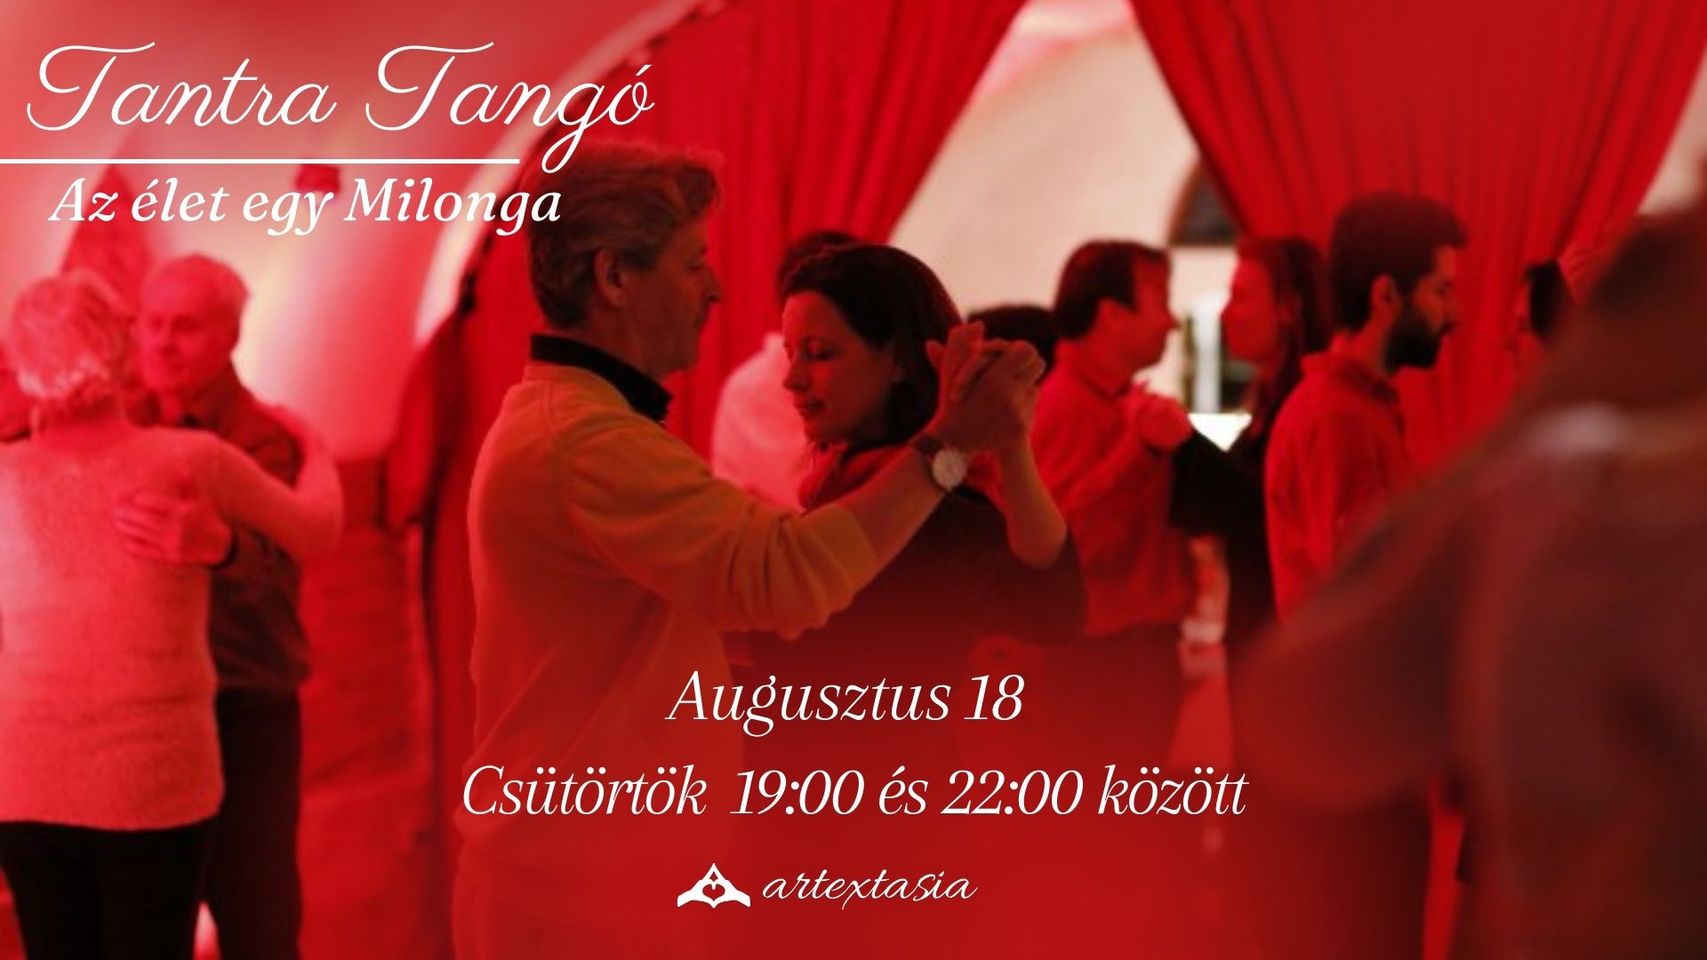 Tantra Tango, ArtExtasia Budapest, 18 August